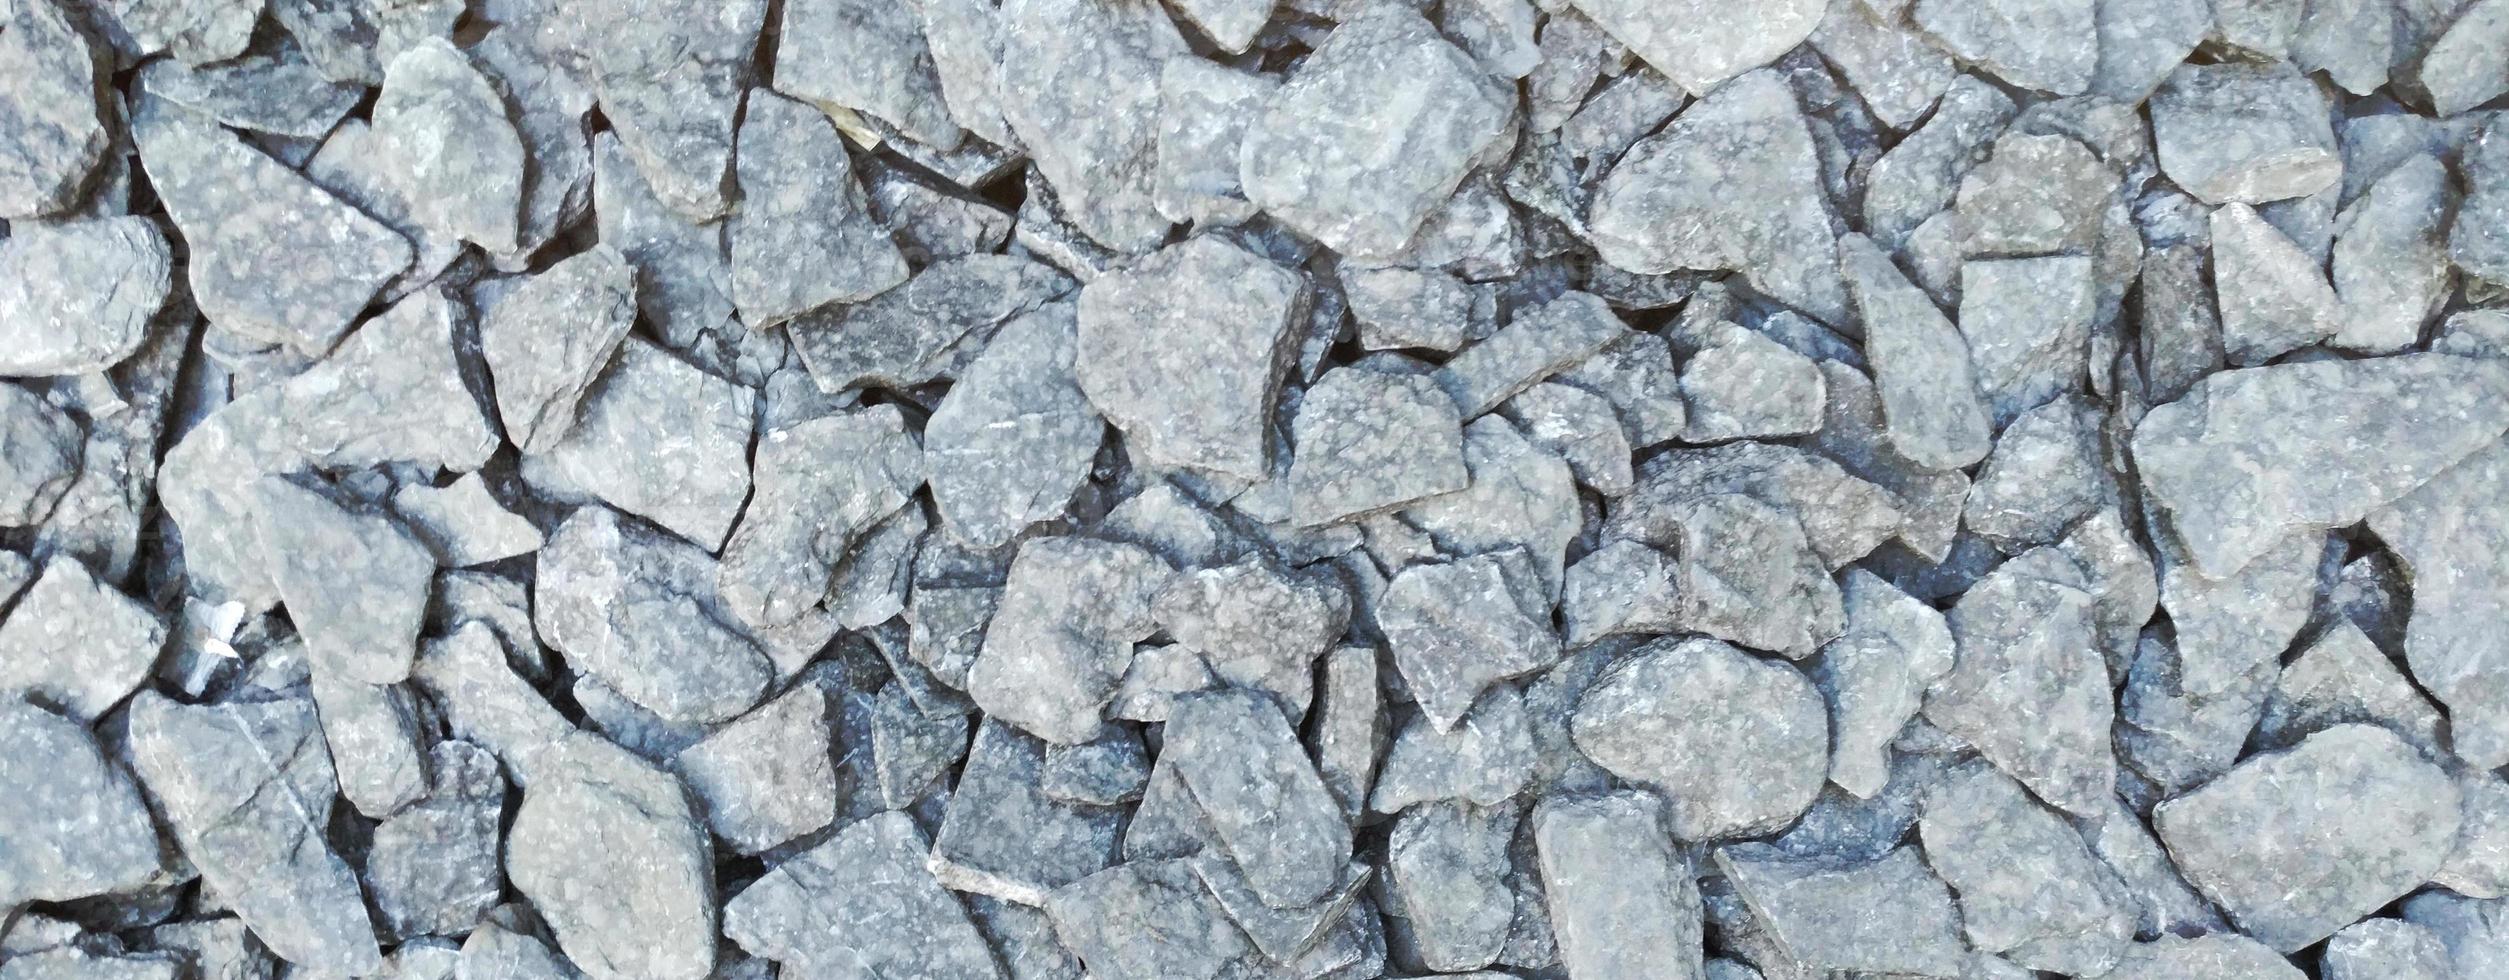 Las rocas y la textura de piedra de fondo foto